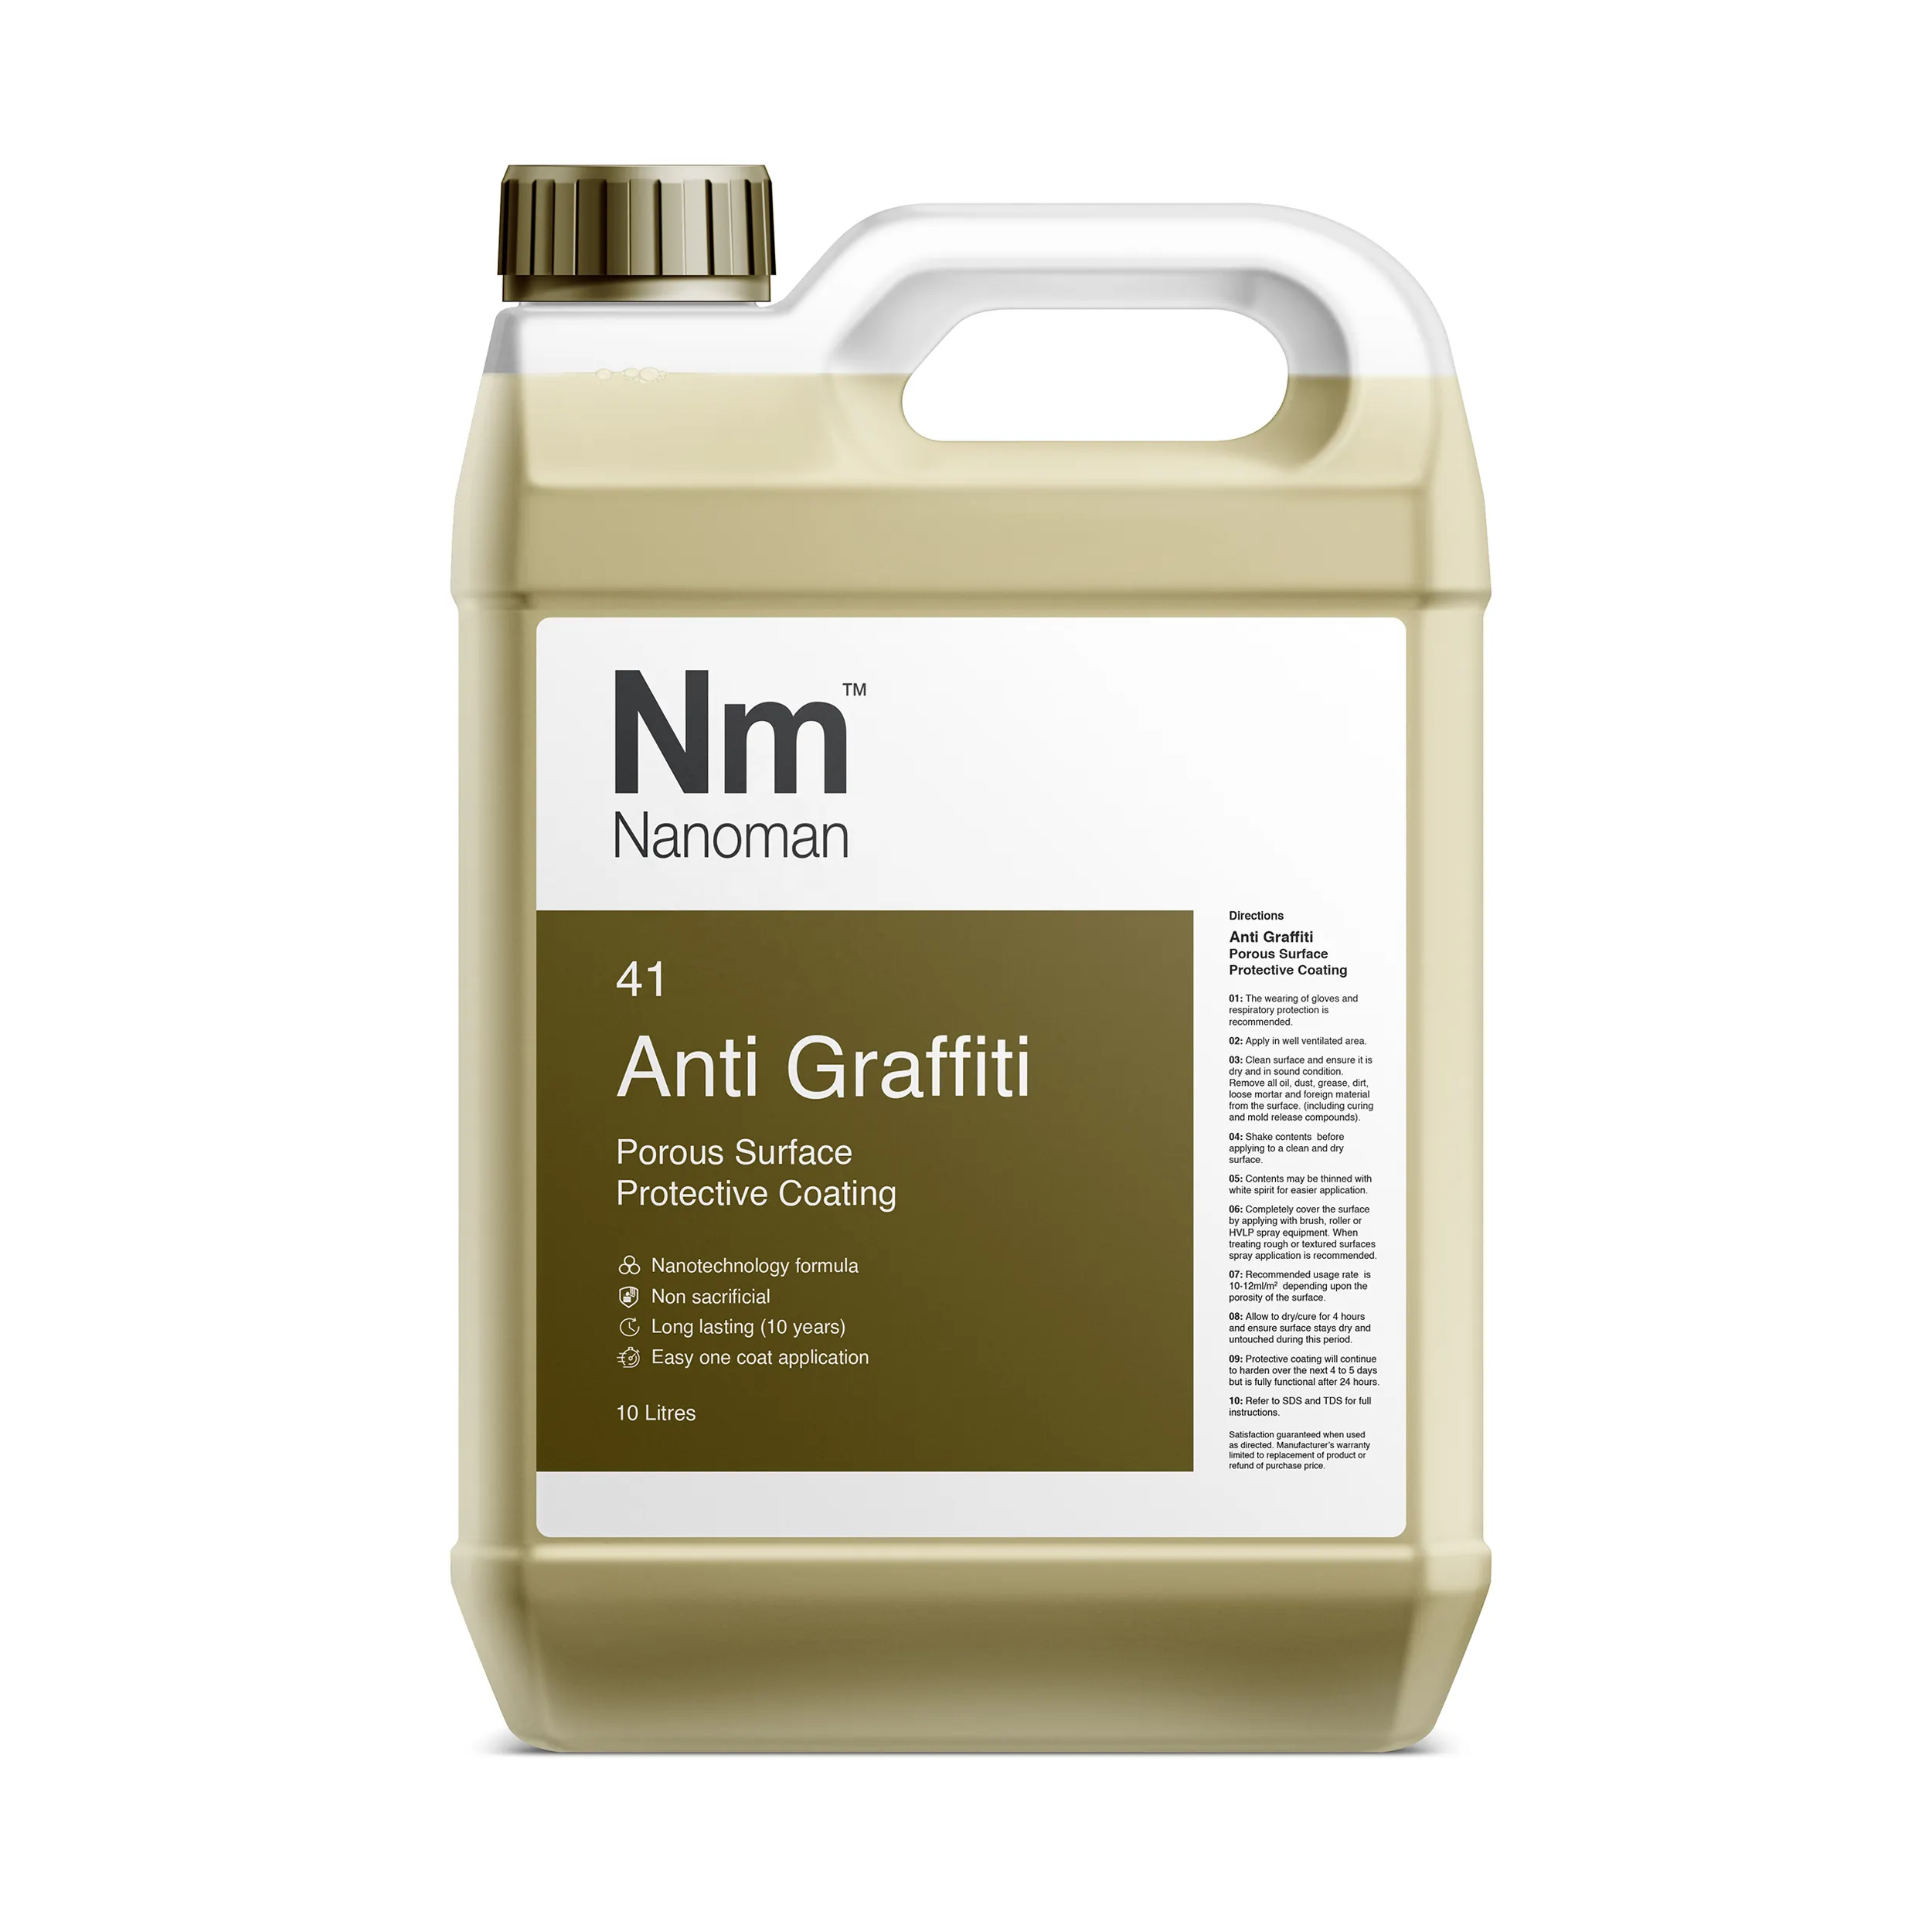 Toda a nanomã anti-grafite pedra-nano revestimento para evitar o ataque de grafite em superfícies de madeira